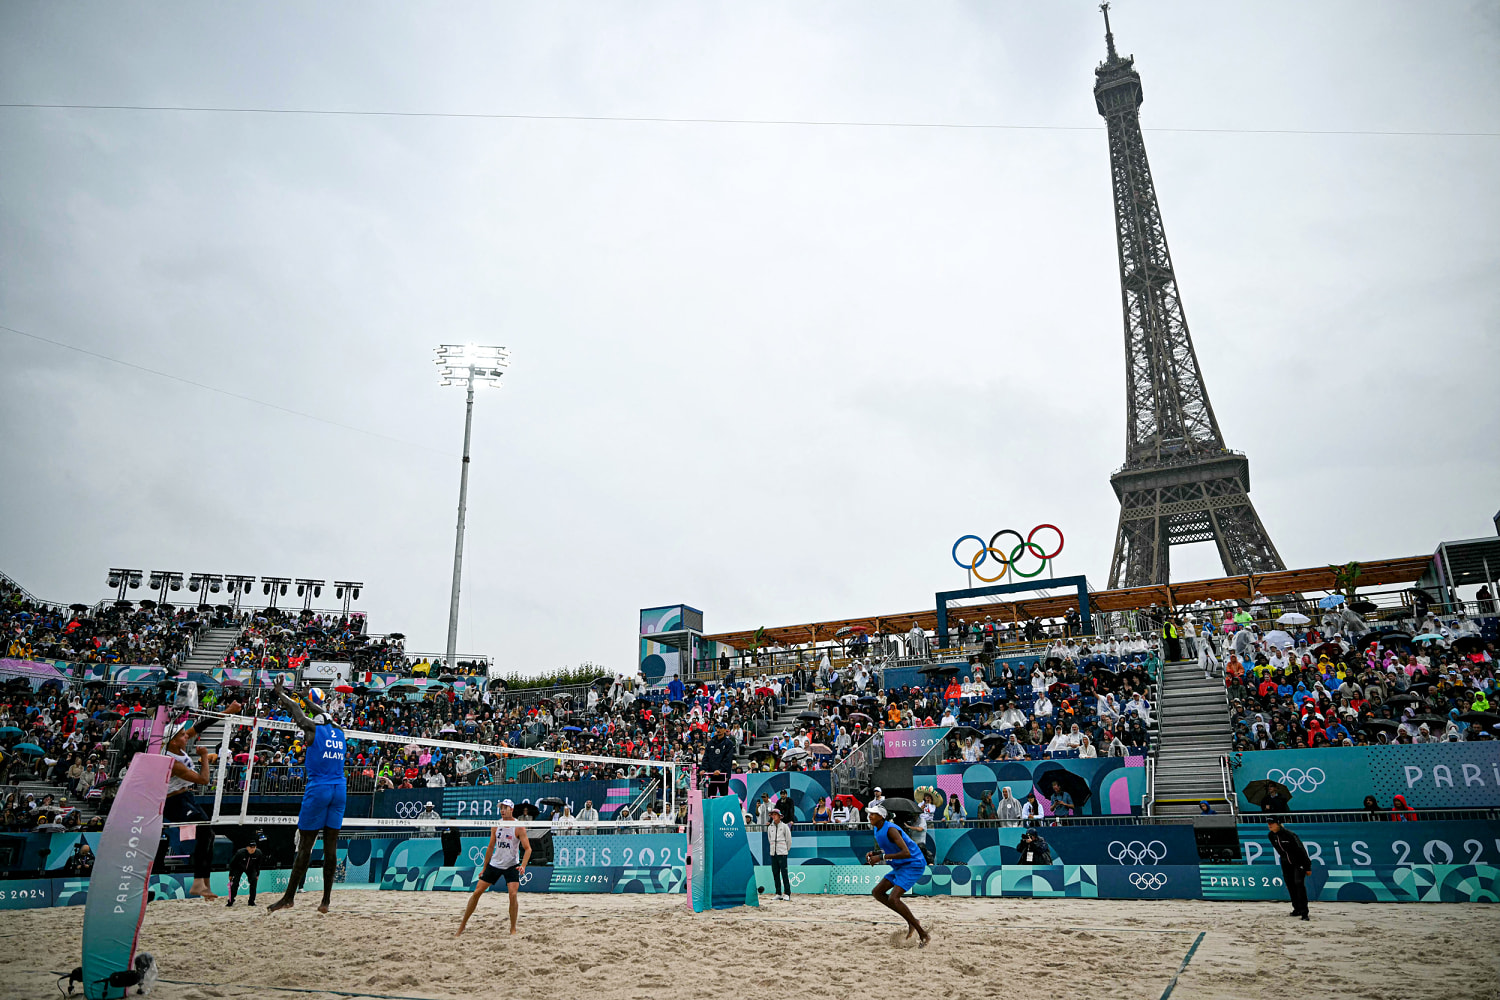 Beach volleyball begins under the Eiffel Tower despite the torrential rains